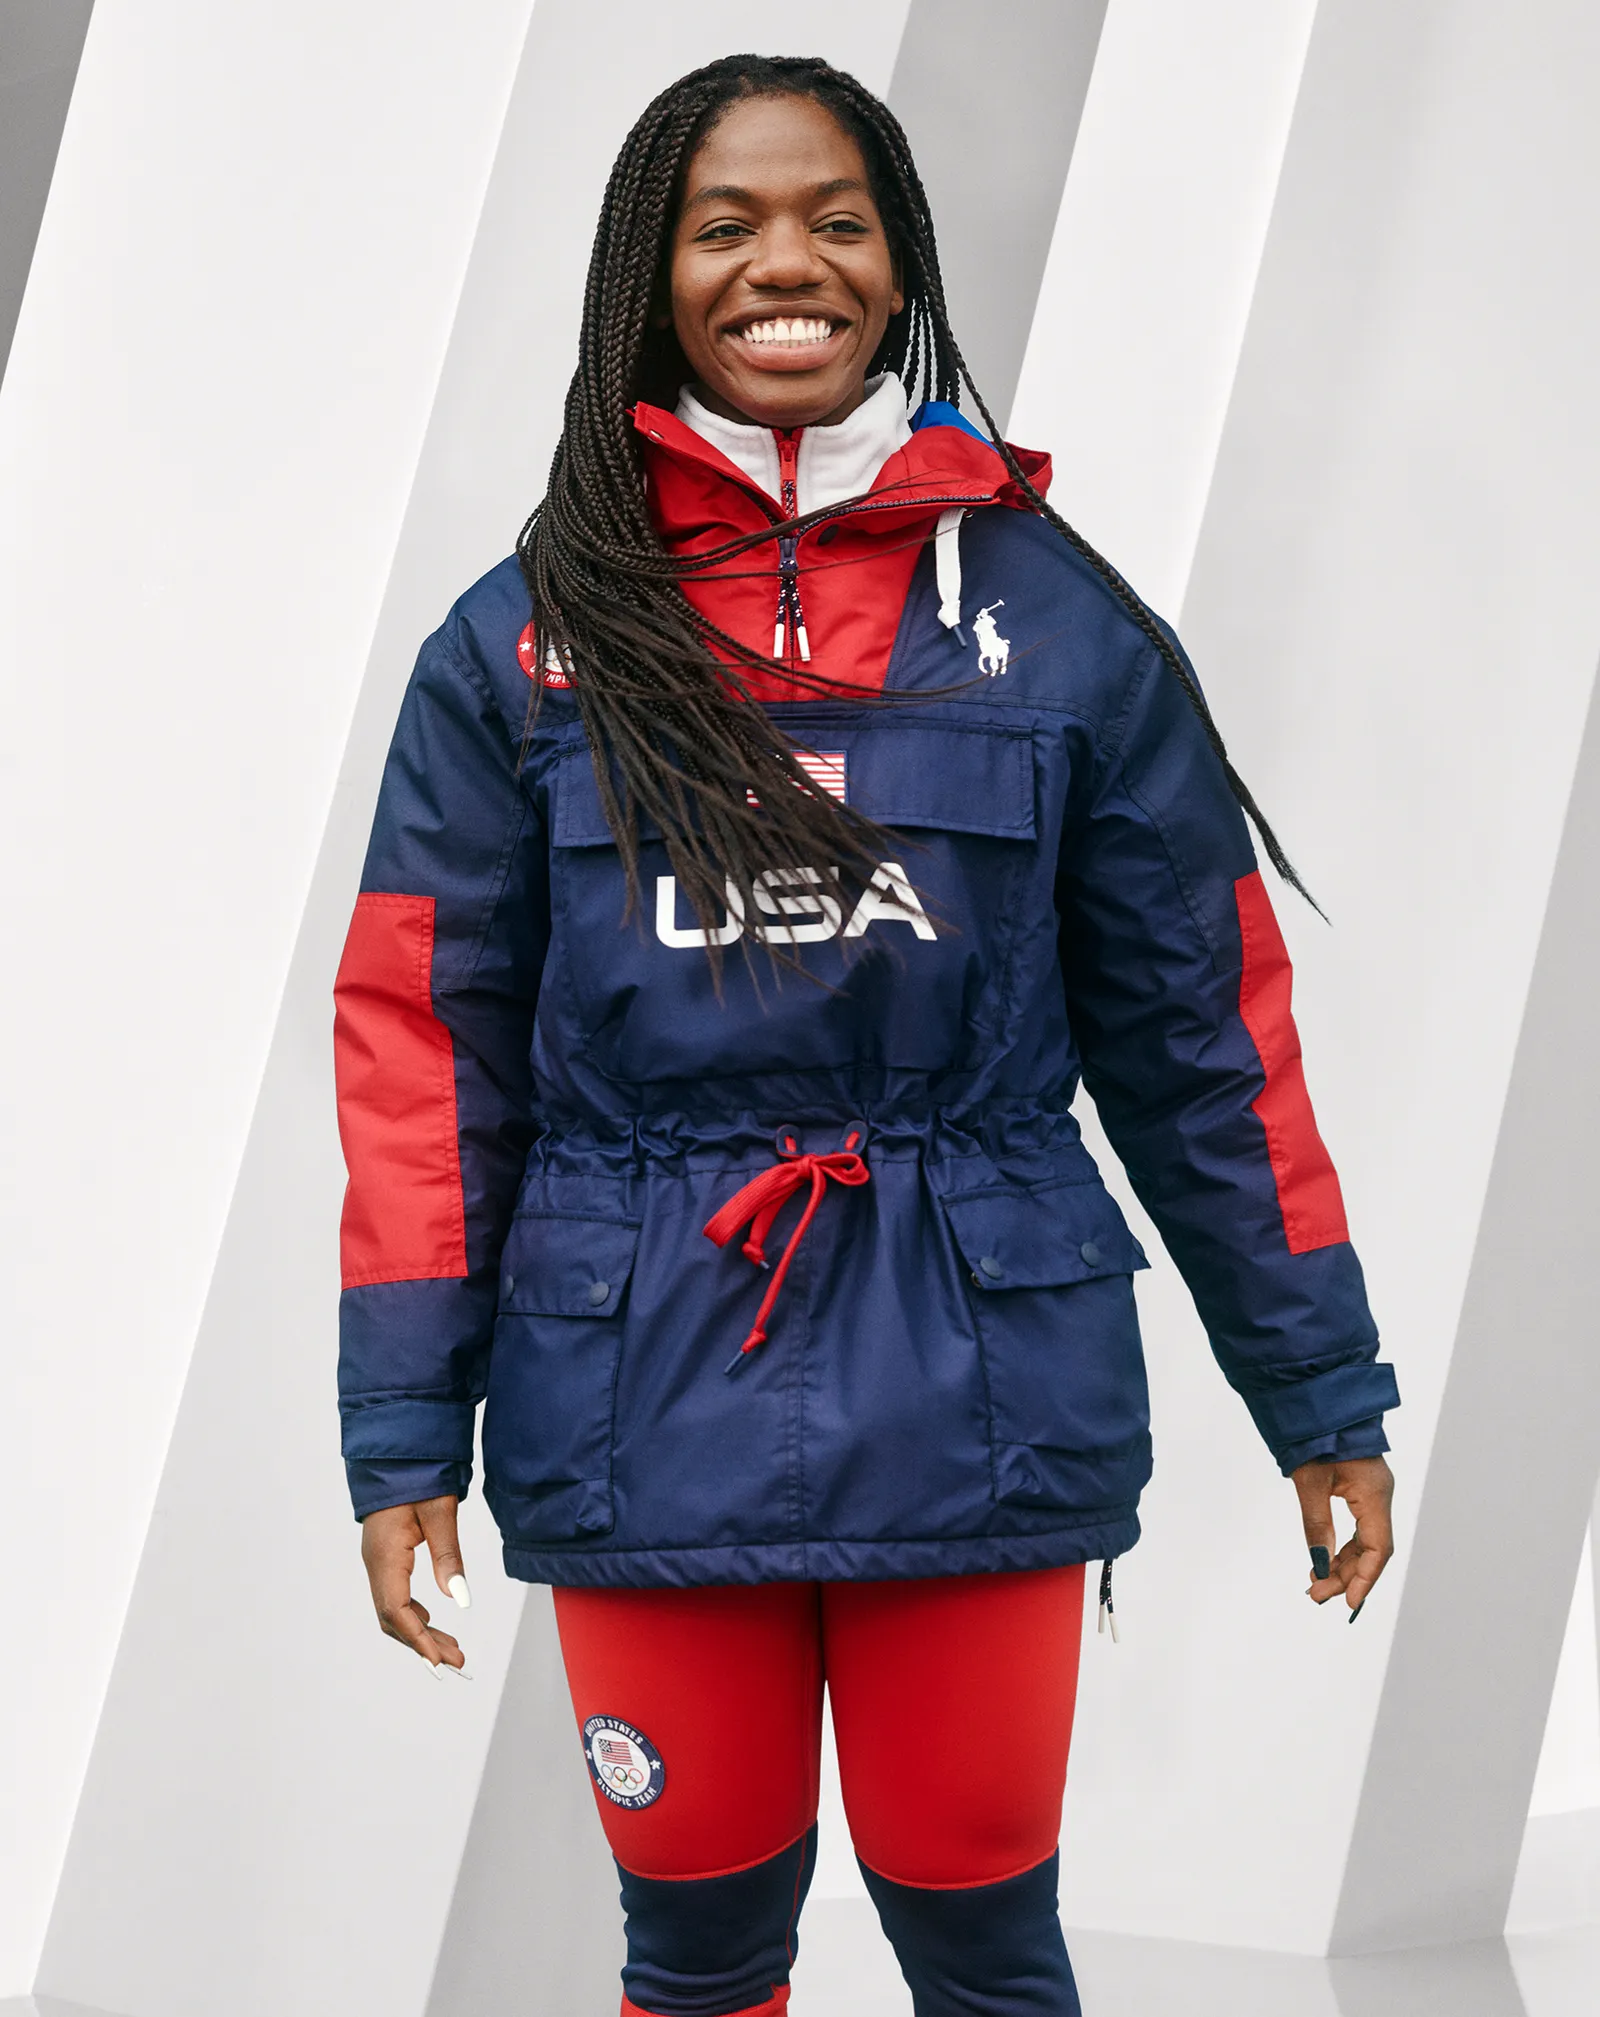 Ralph Lauren представил дизайн зимней спортивной формы для олимпийской команды США (фото 3)